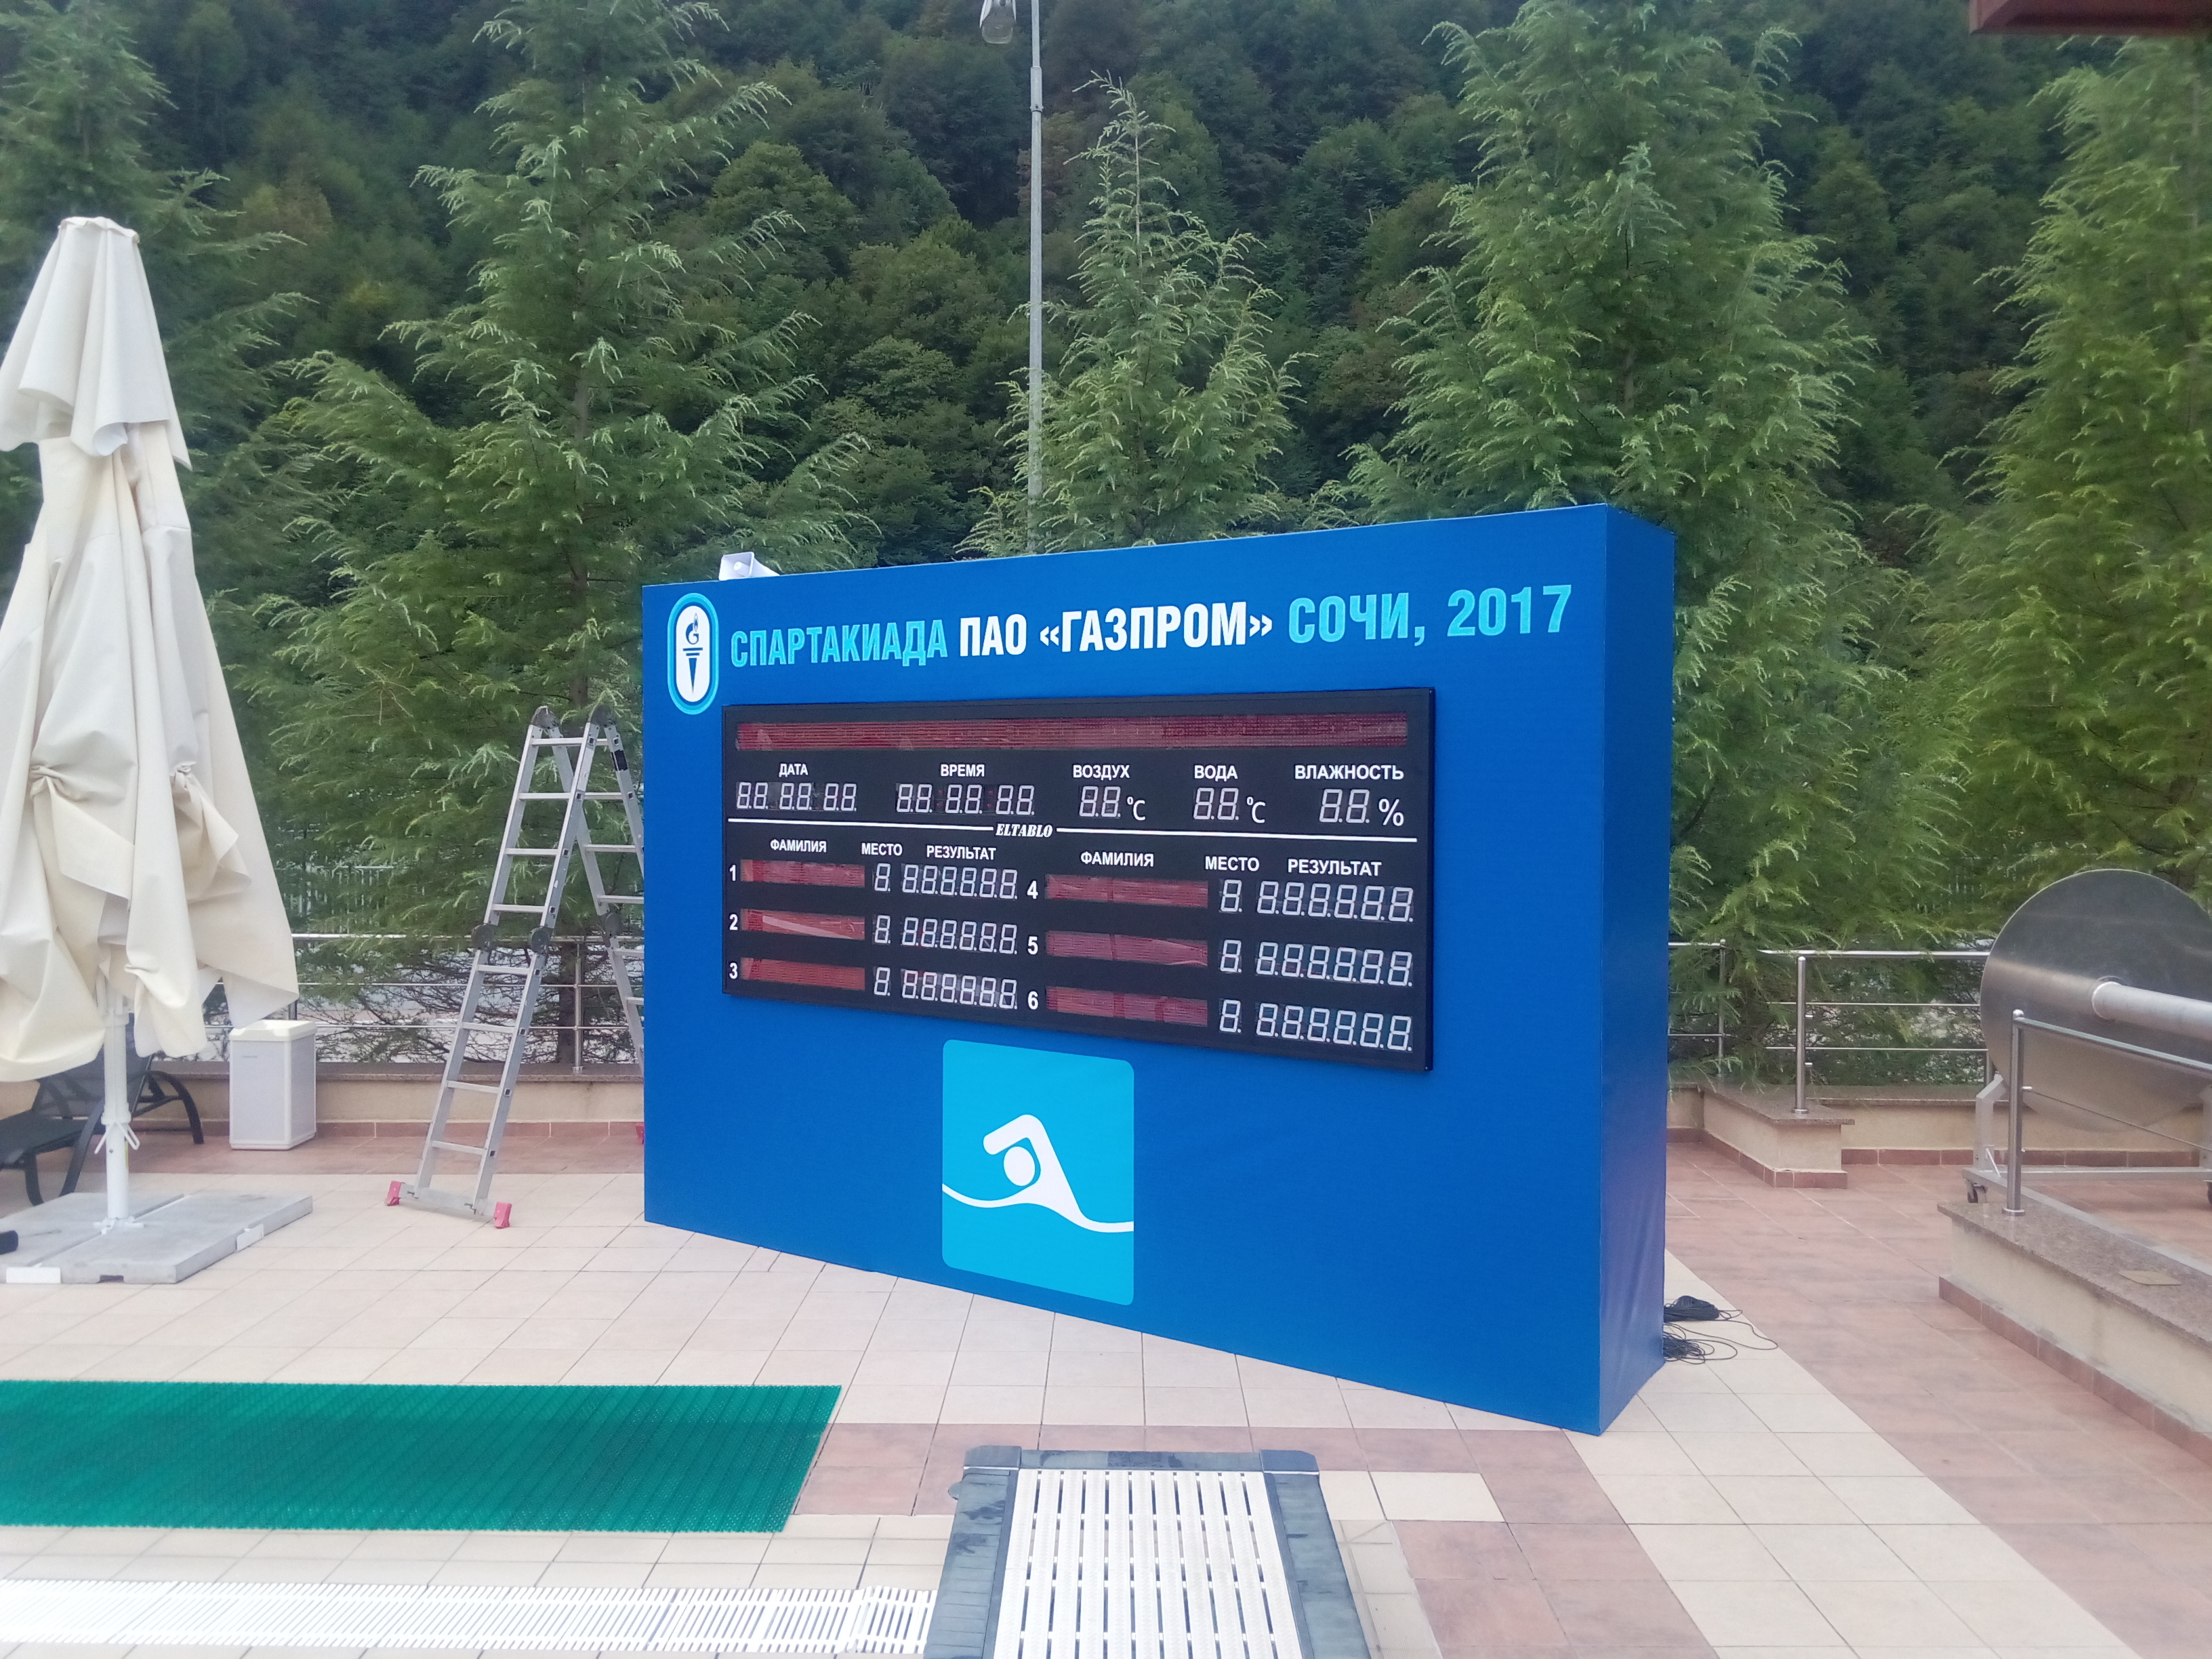 Табло для бассейна для Спартакиады ПАО Газпром 2017 в Сочи